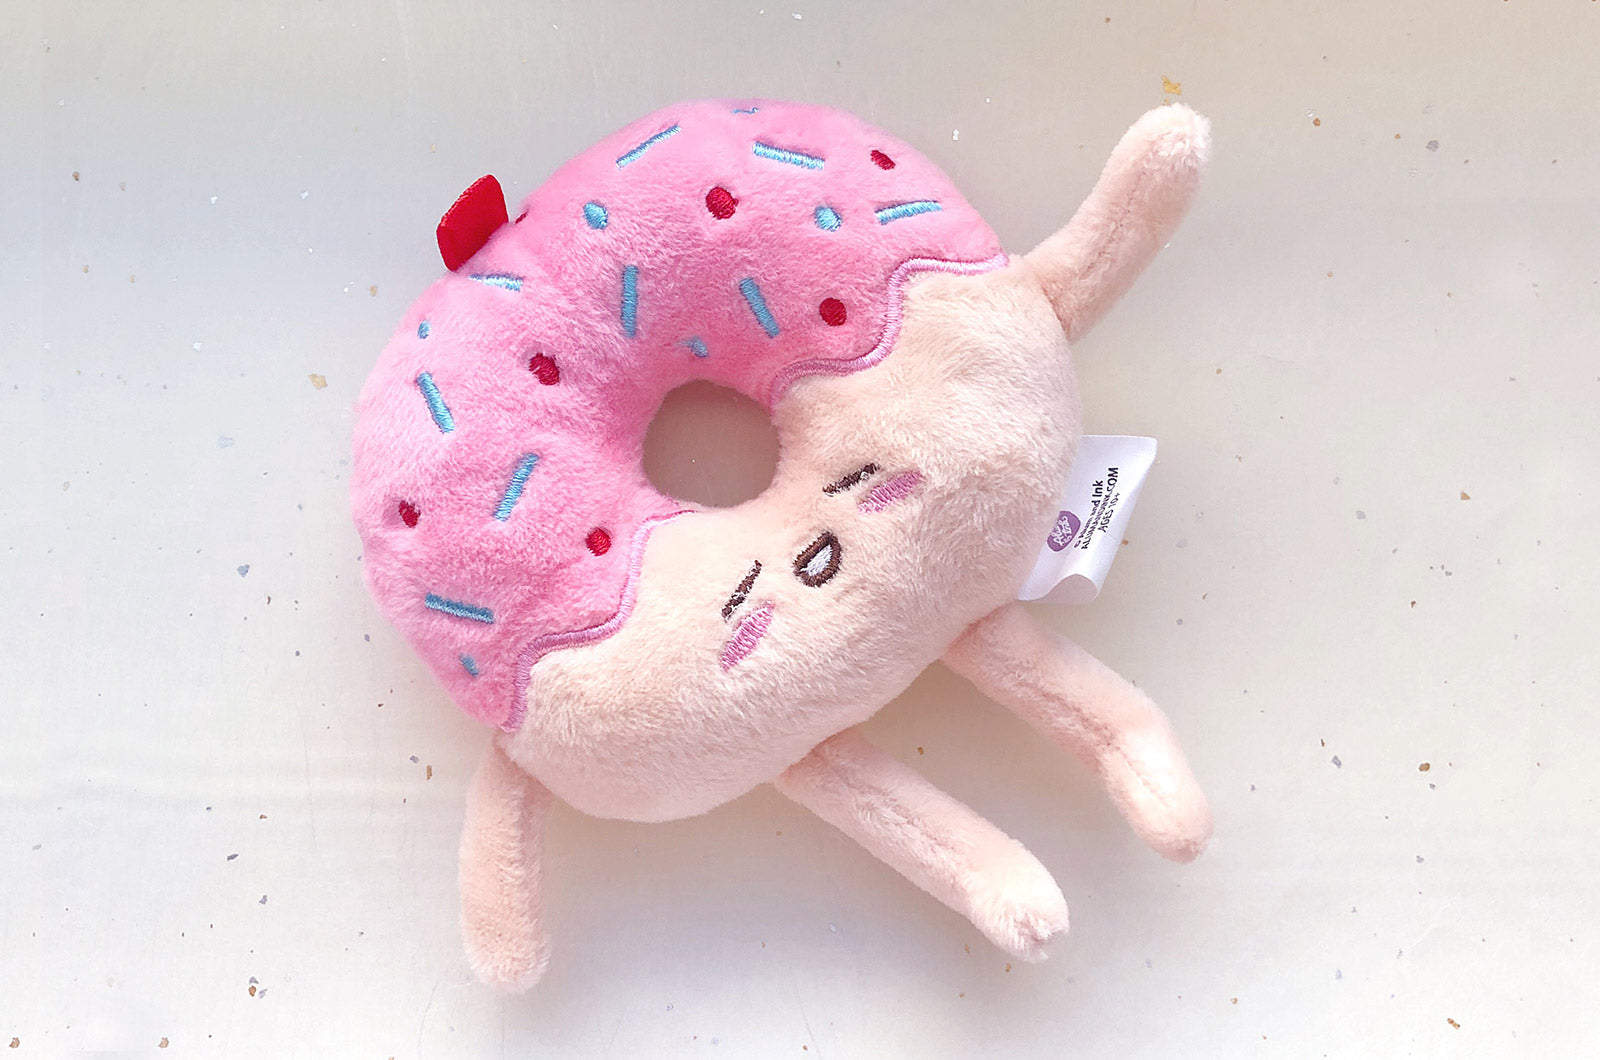 donut stuffed toy